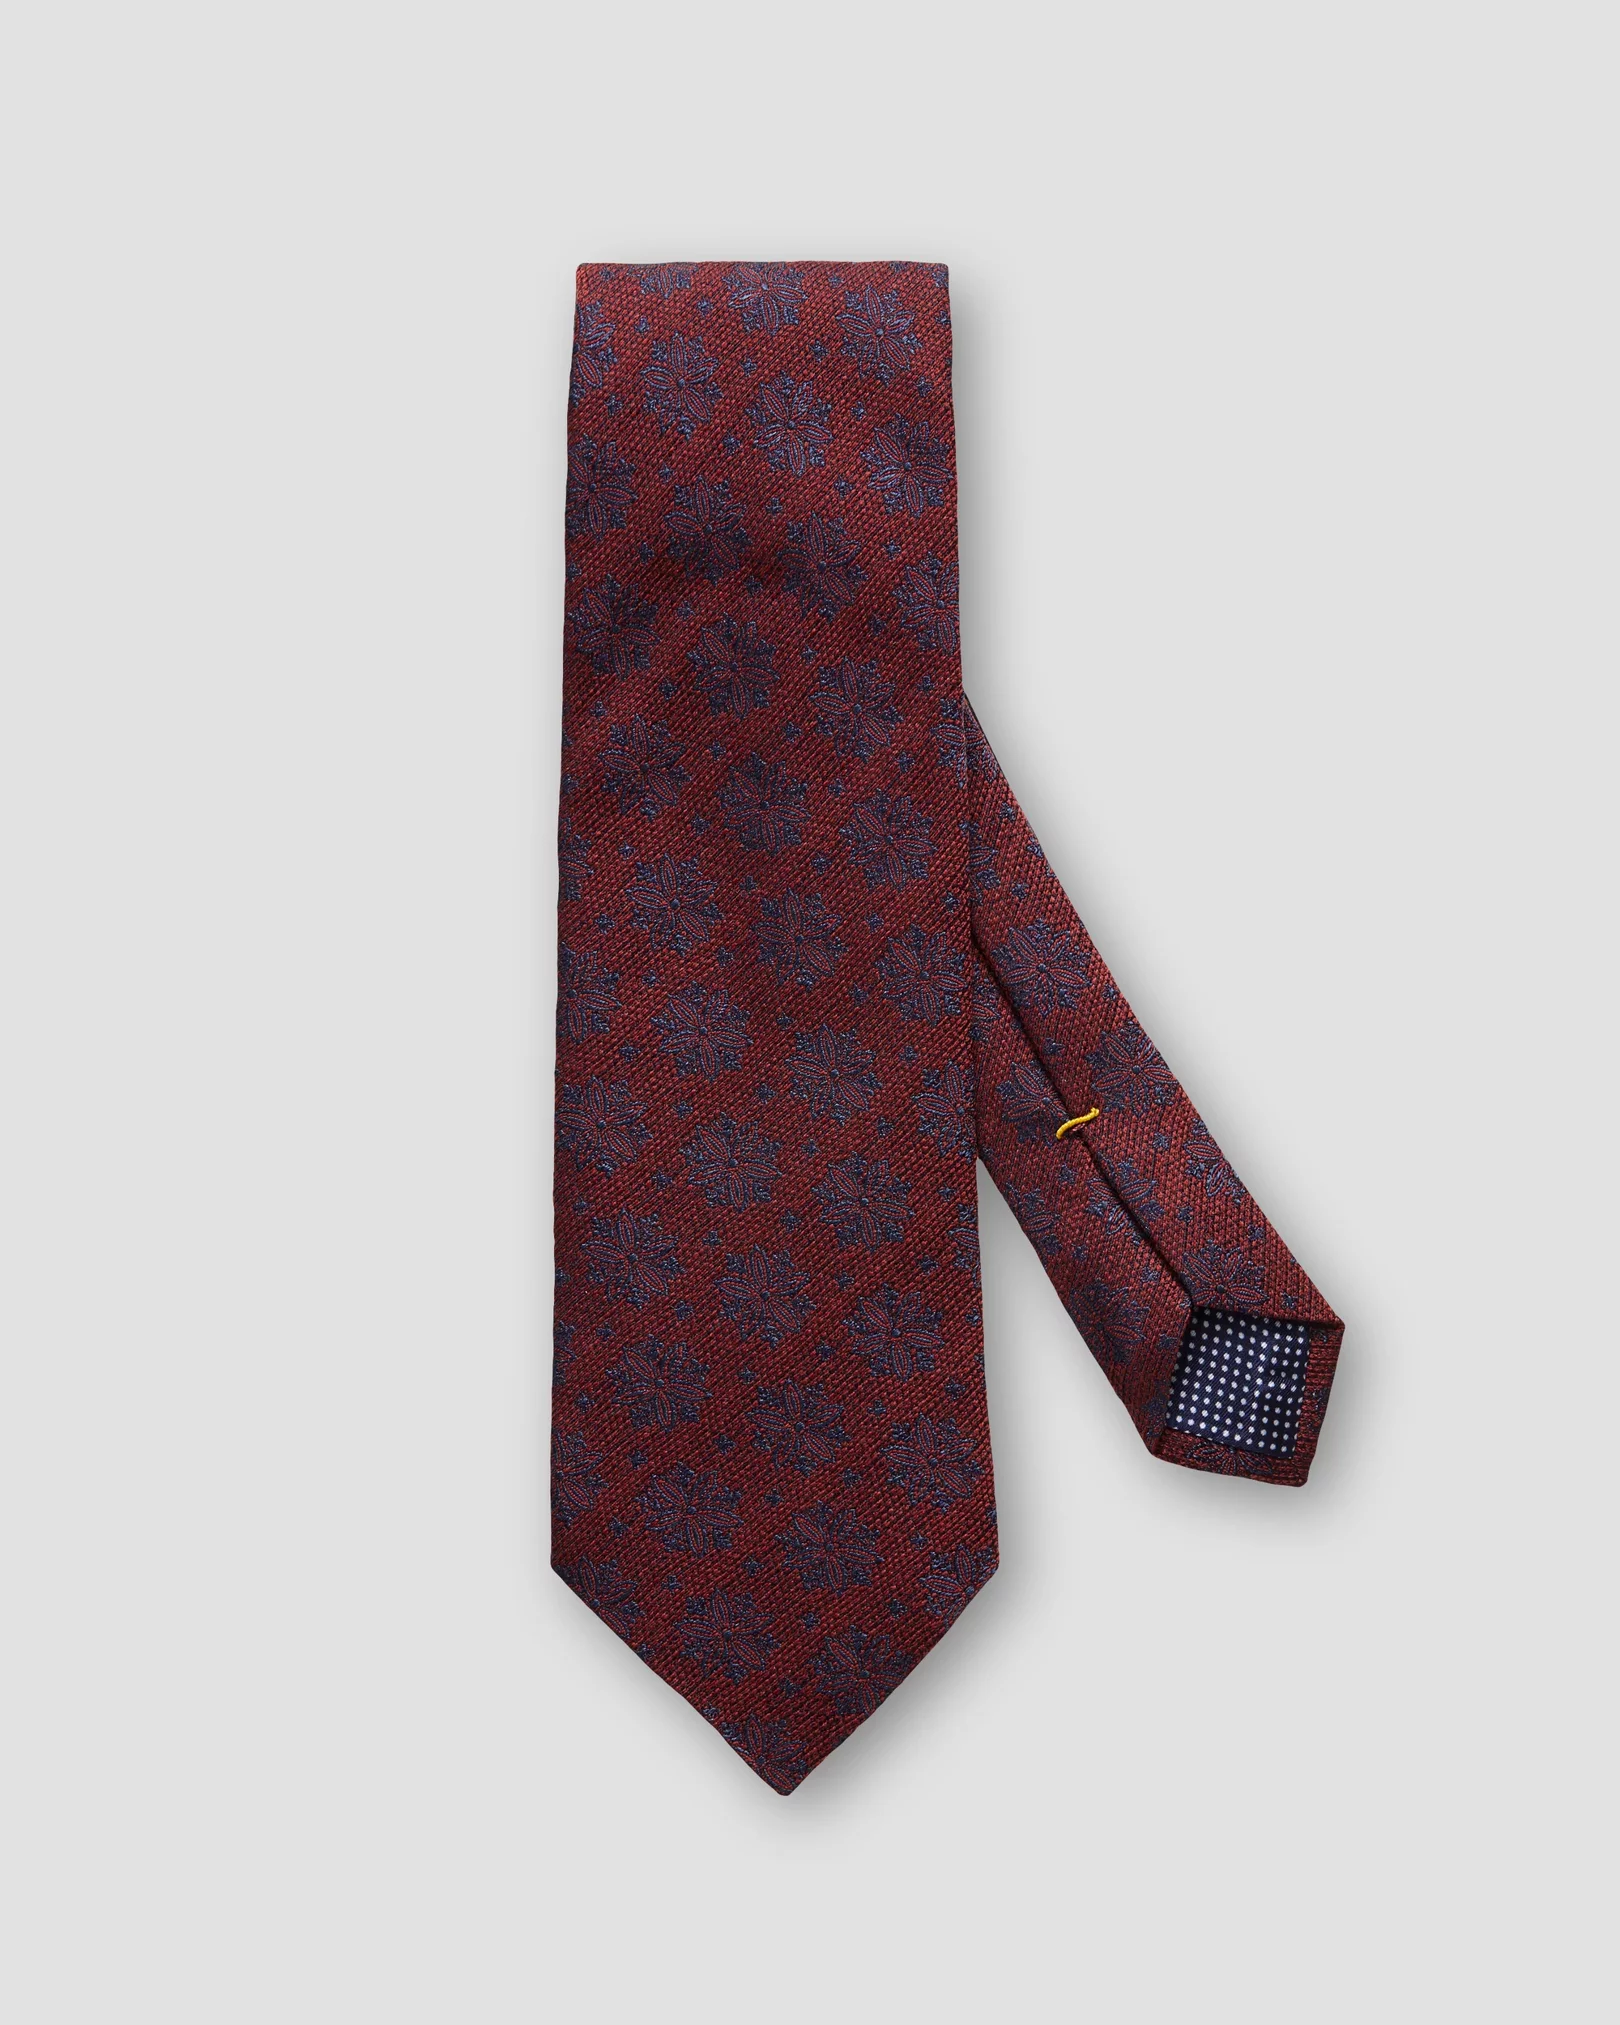 Eton - red floral printed tie